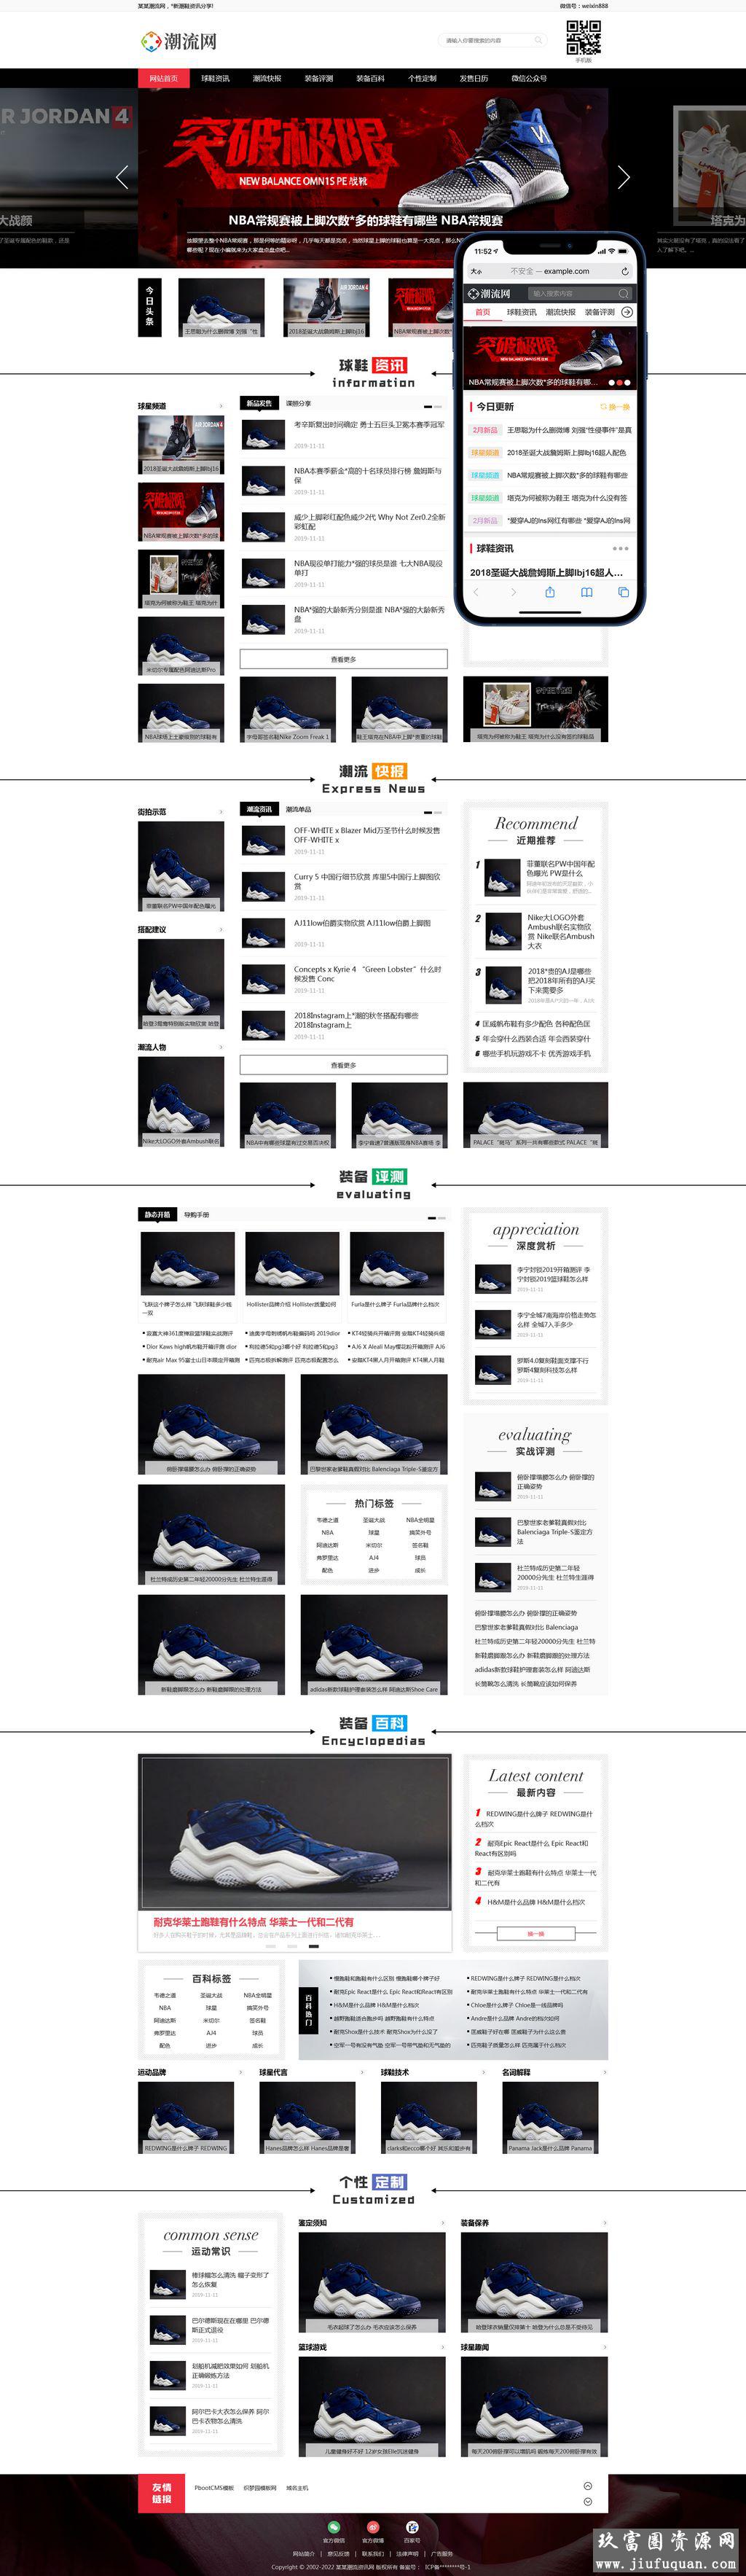 潮牌鞋球鞋潮流新闻资讯类网站pbootcms模板